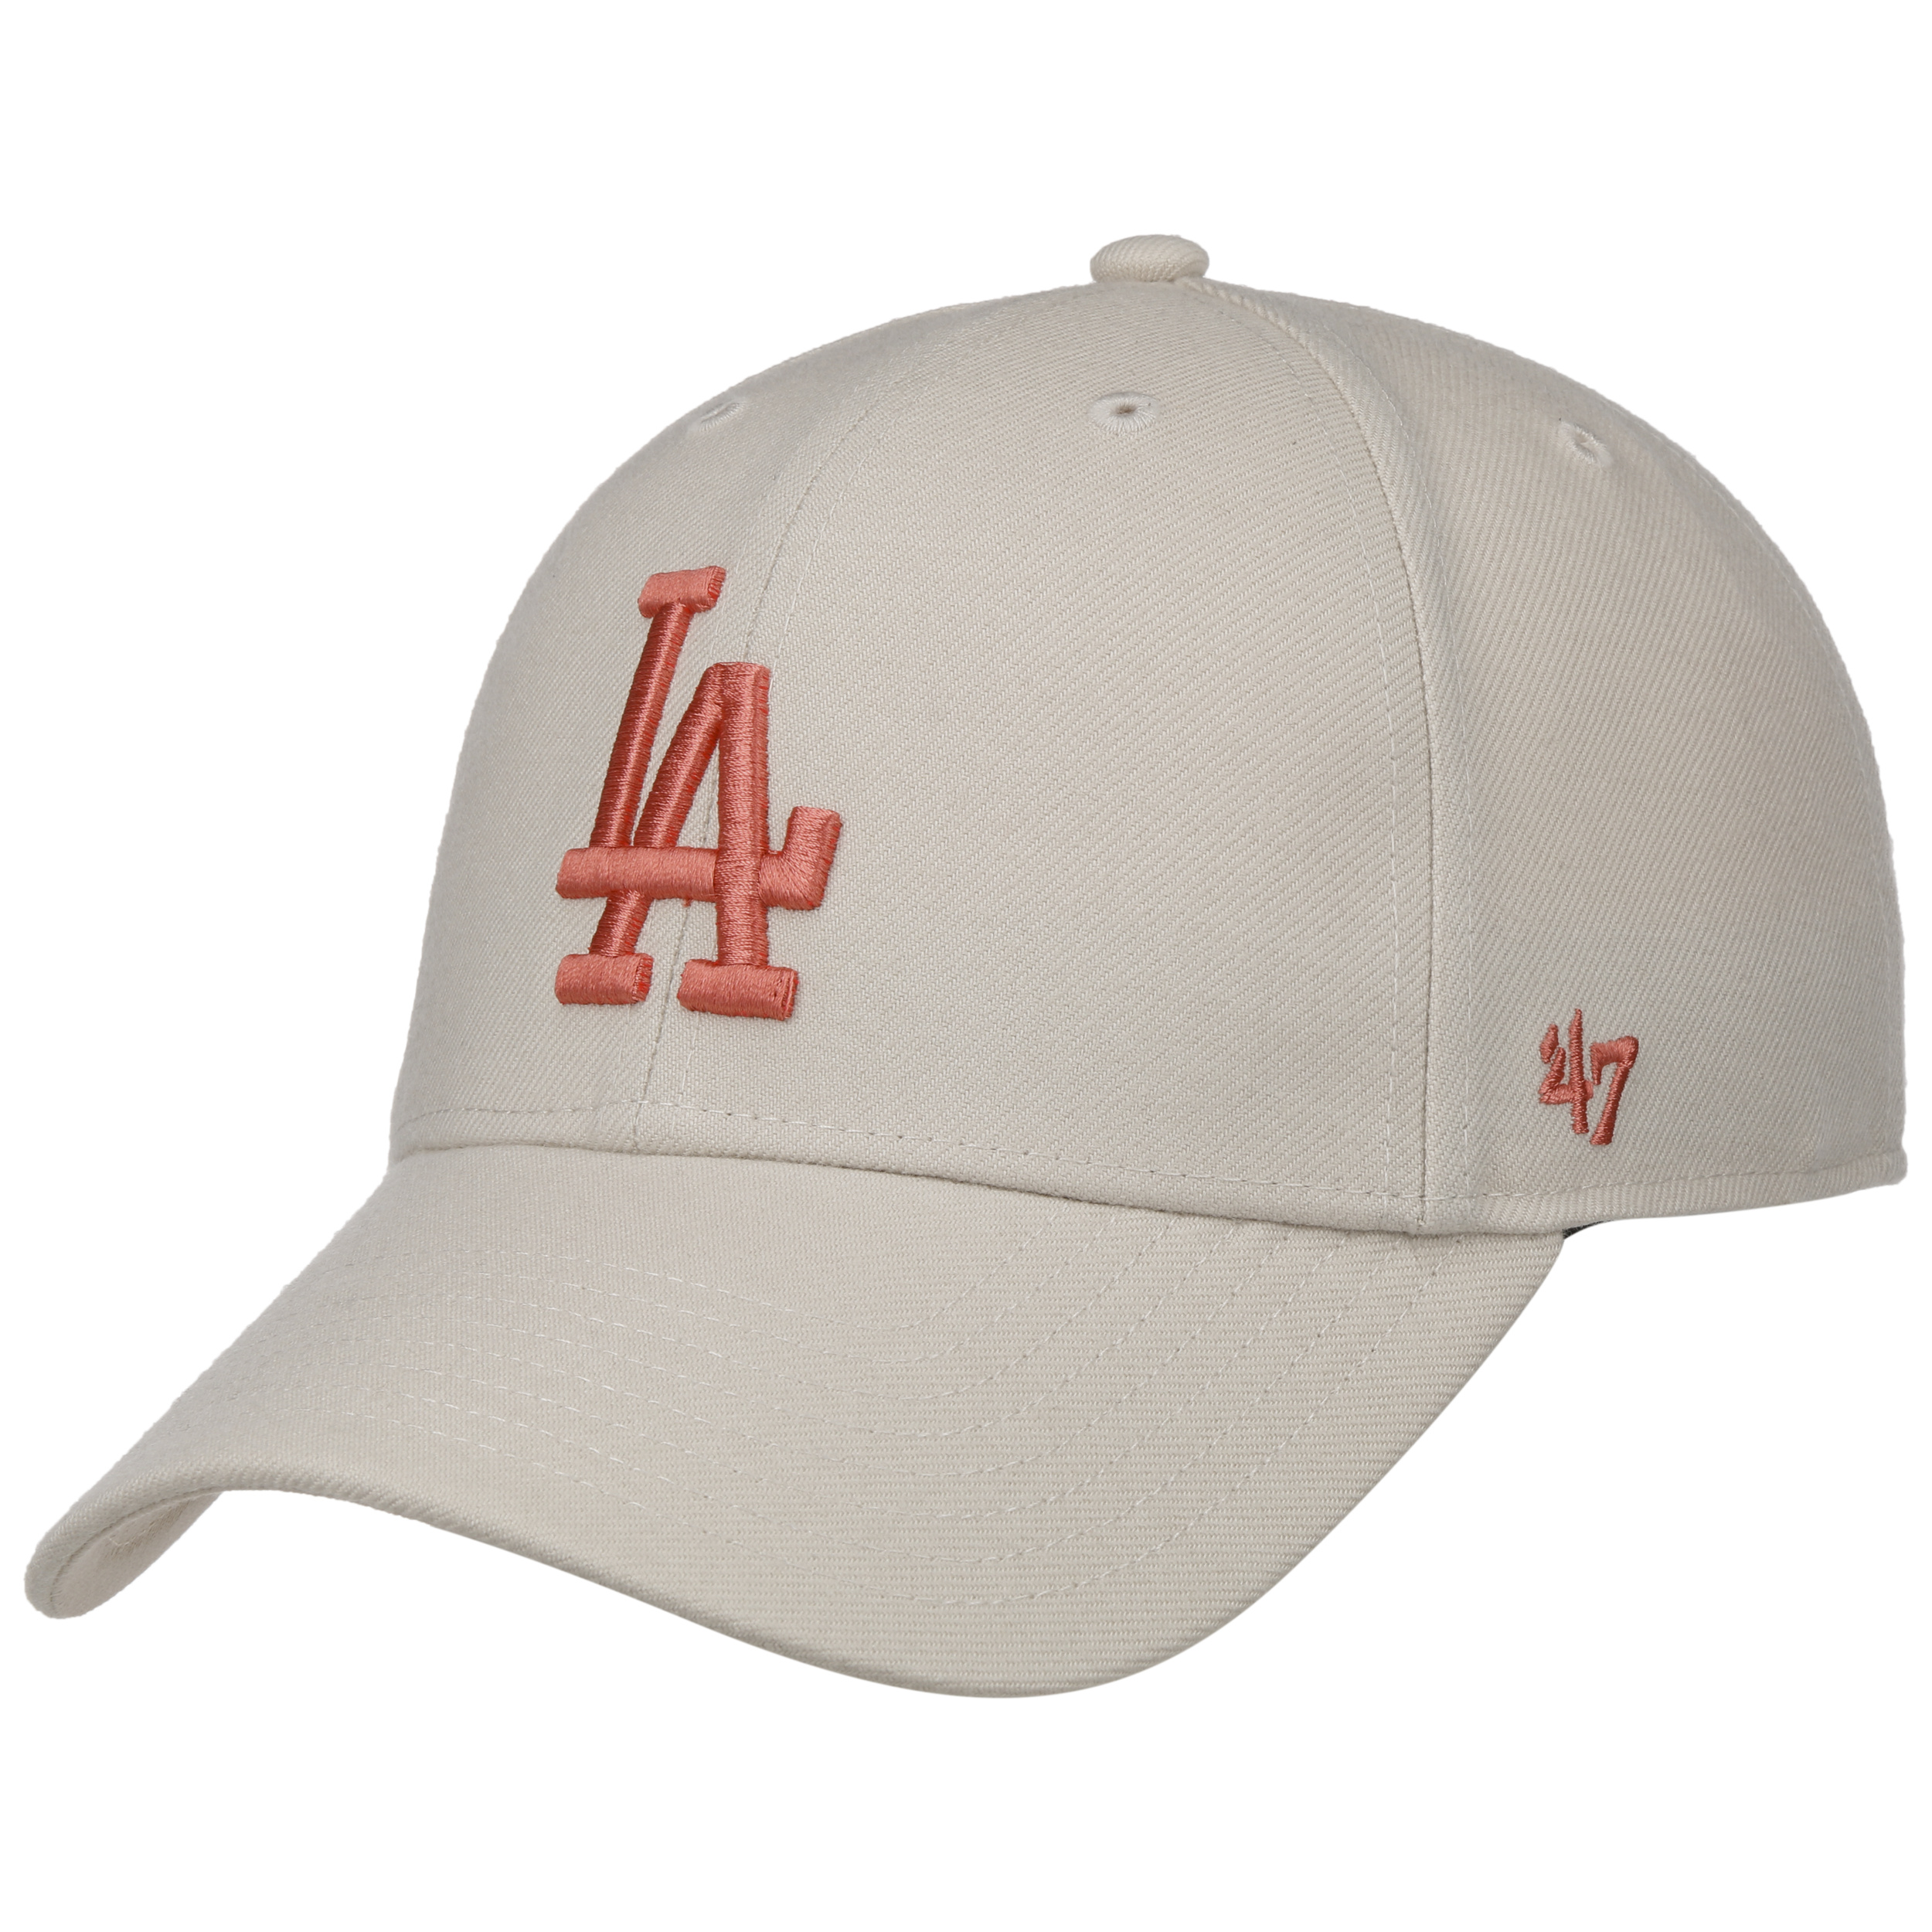 MLB Ladies Hat, Ladies Snapback, MLB Caps